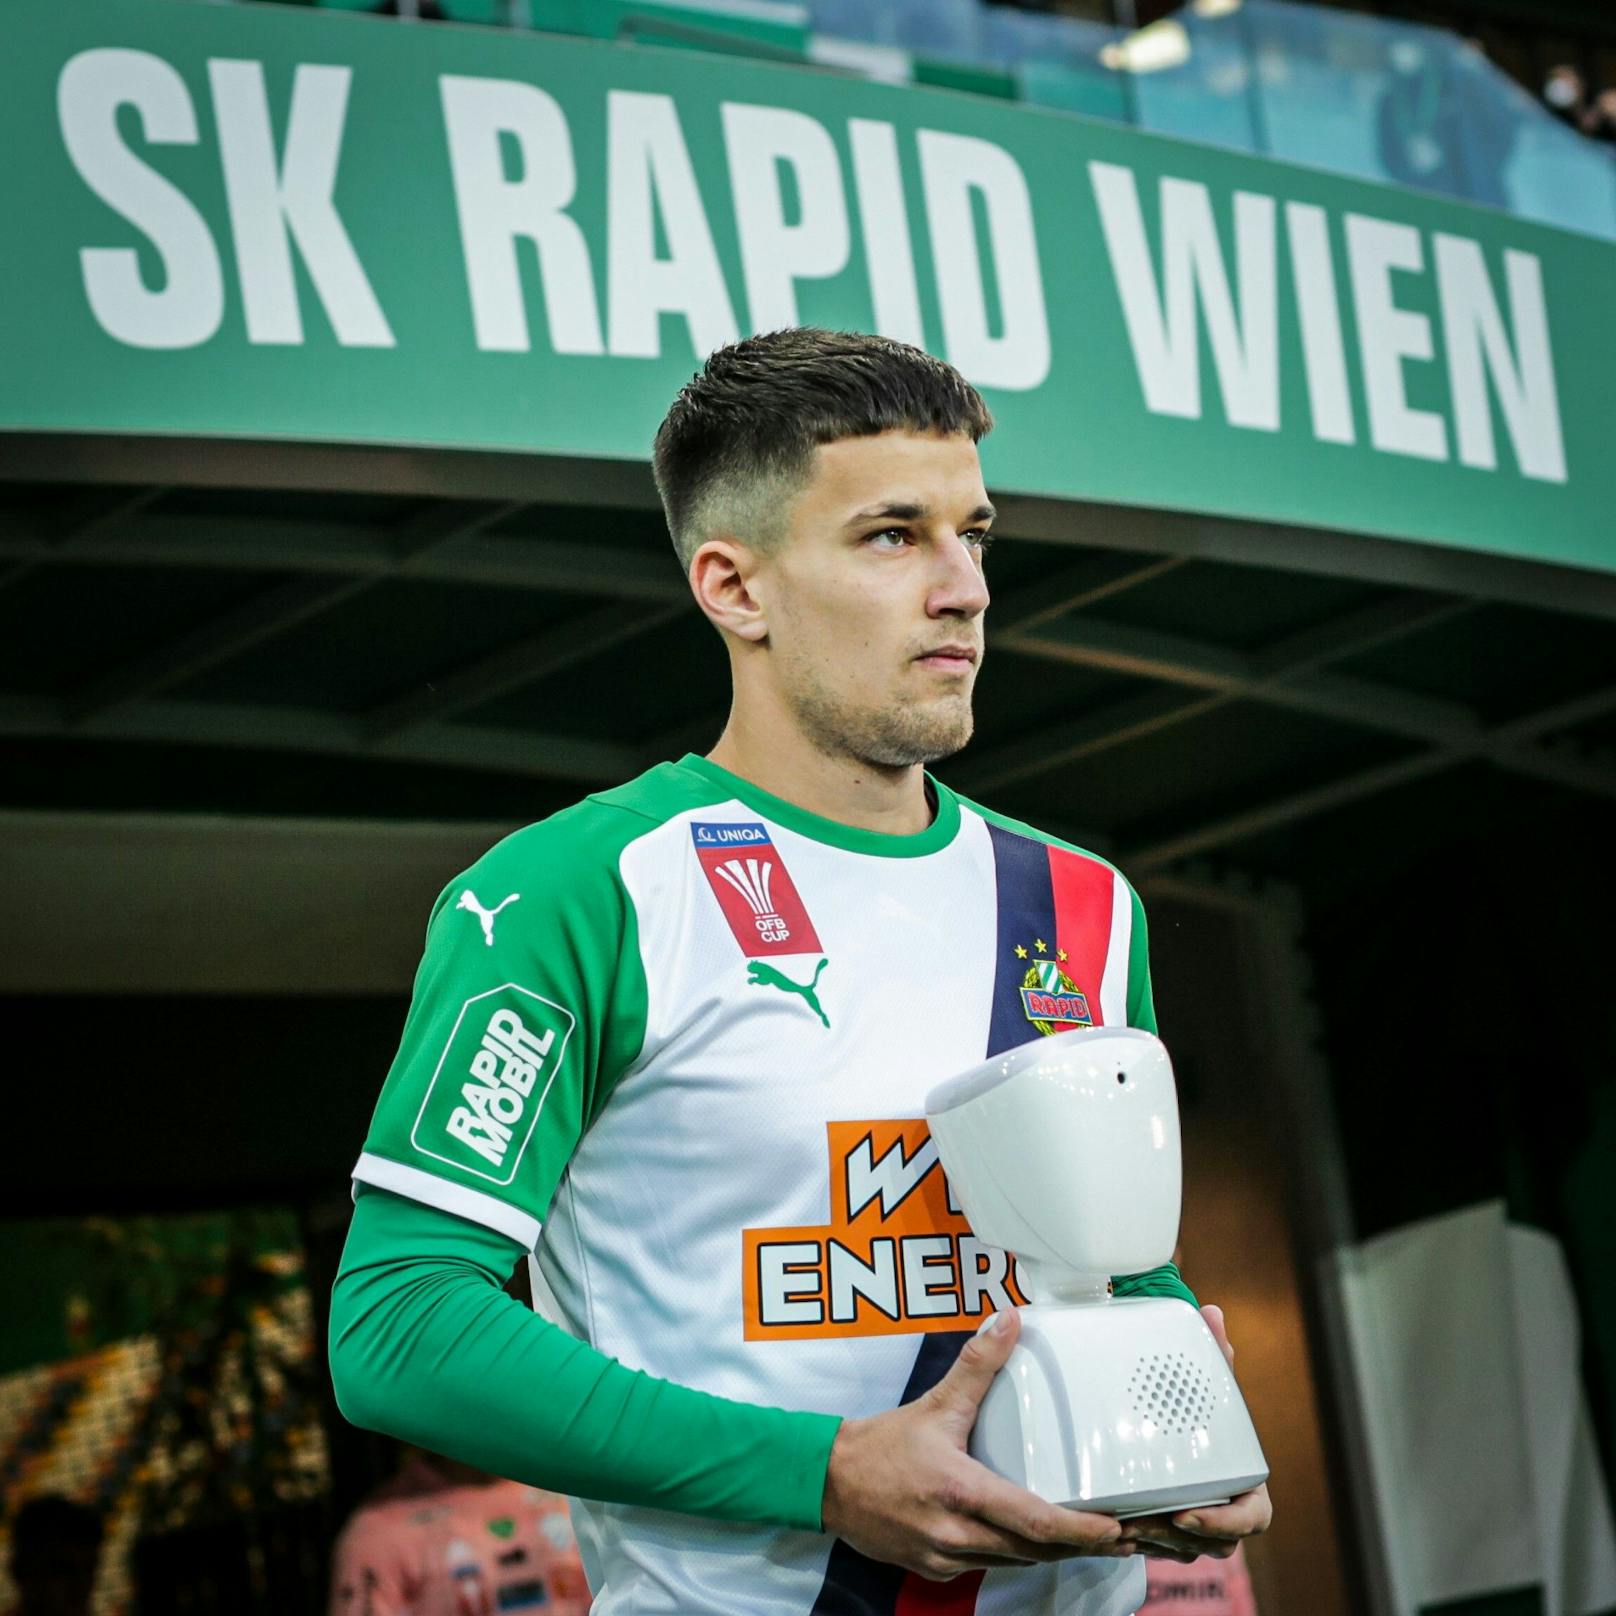 Rapidspieler Jonas Auer trug den Avatar "Rapidini" am Samstag zu seinem ersten Einsatz aufs Spielfeld im Wiener Allianz Stadion.